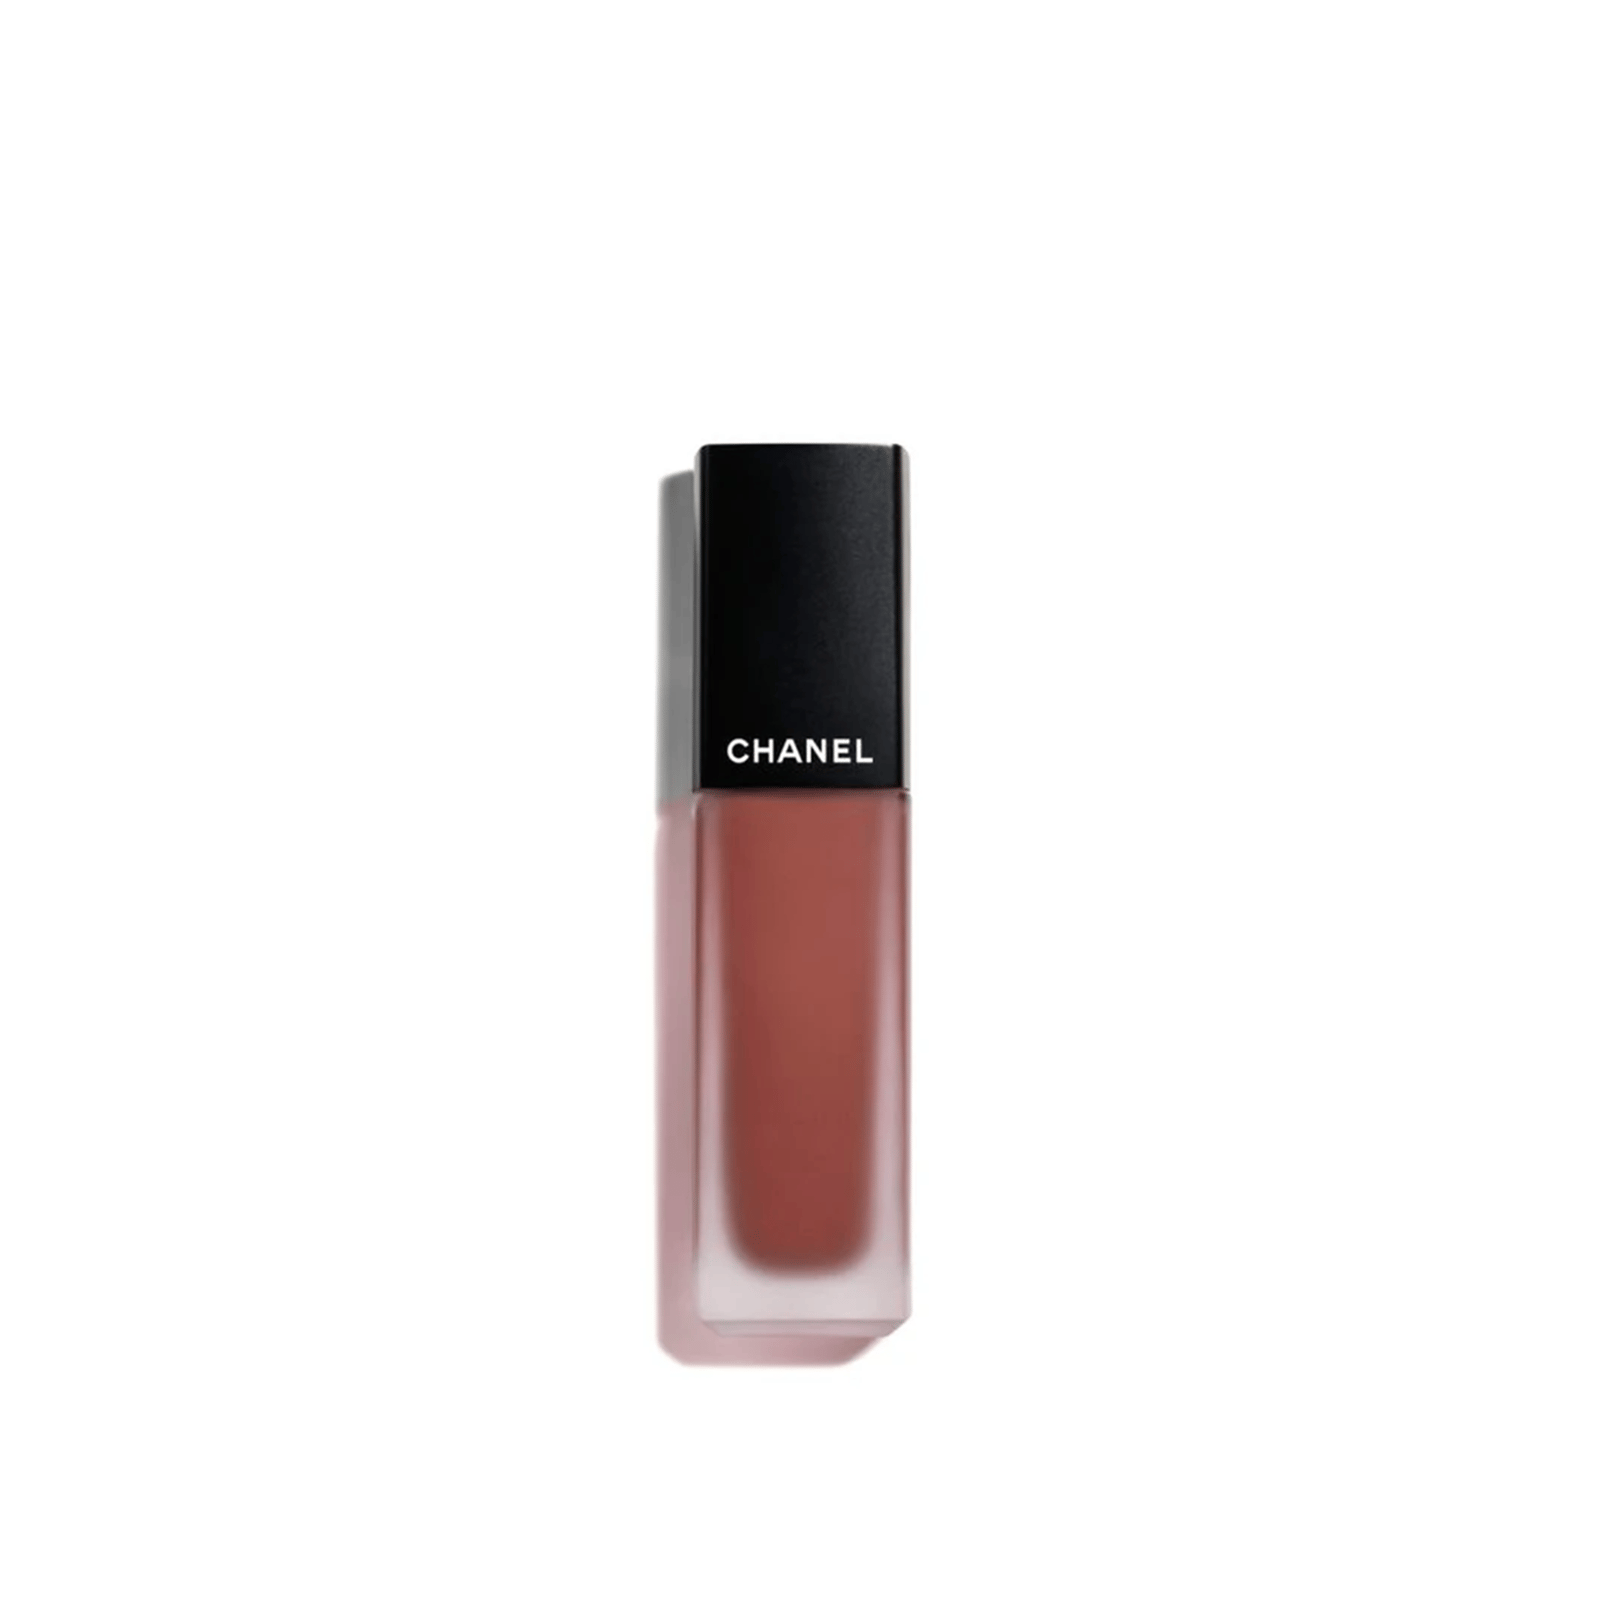 CHANEL Rouge Allure Ink Fusion Intense Matte Liquid Lip Colour 834 Ambiguïté 6ml